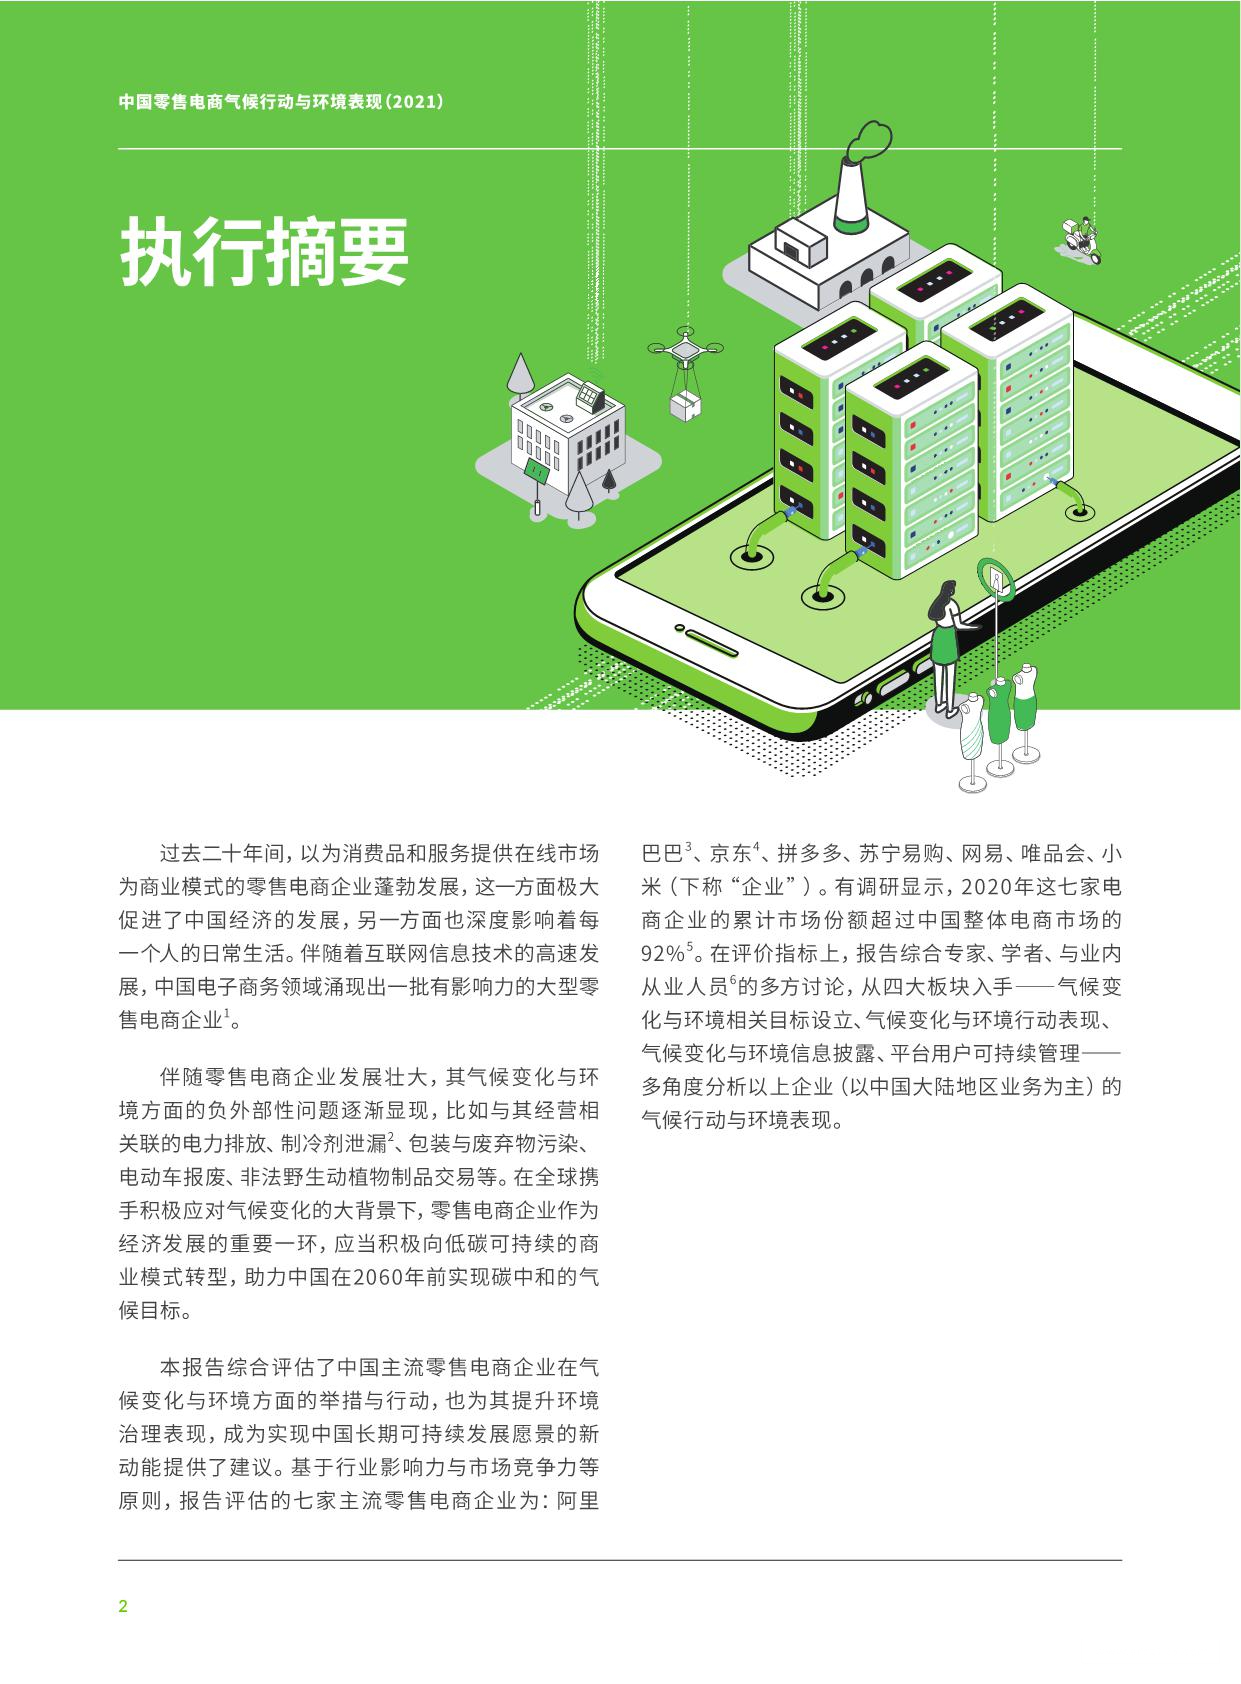 2021年中国零售电商气候行动与环境表现》PDF下载-跨境报告-AMZ123跨境导航